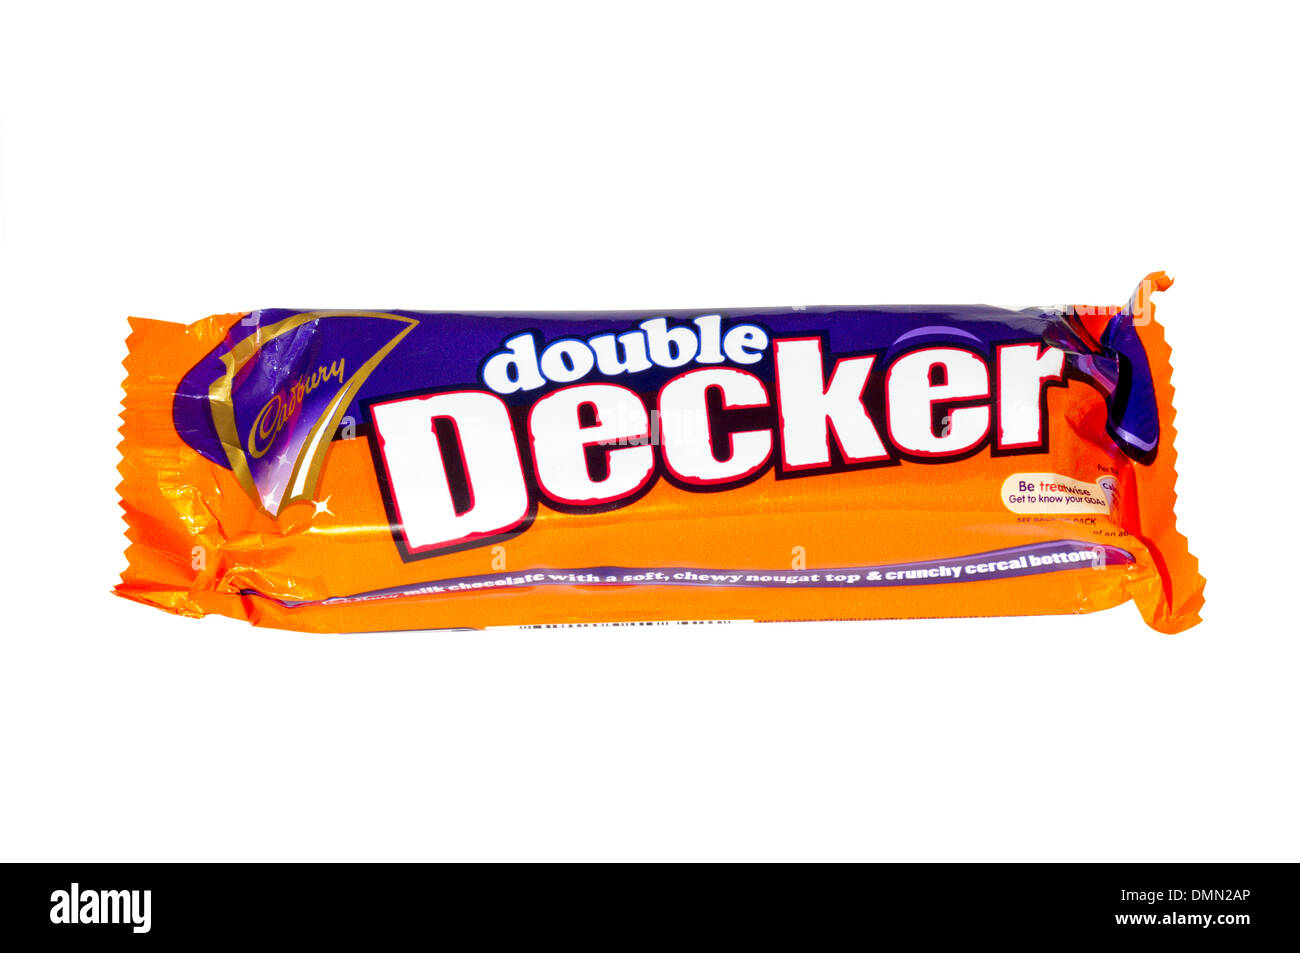 A Cadbury's Double Decker chocolate bar. Stock Photo